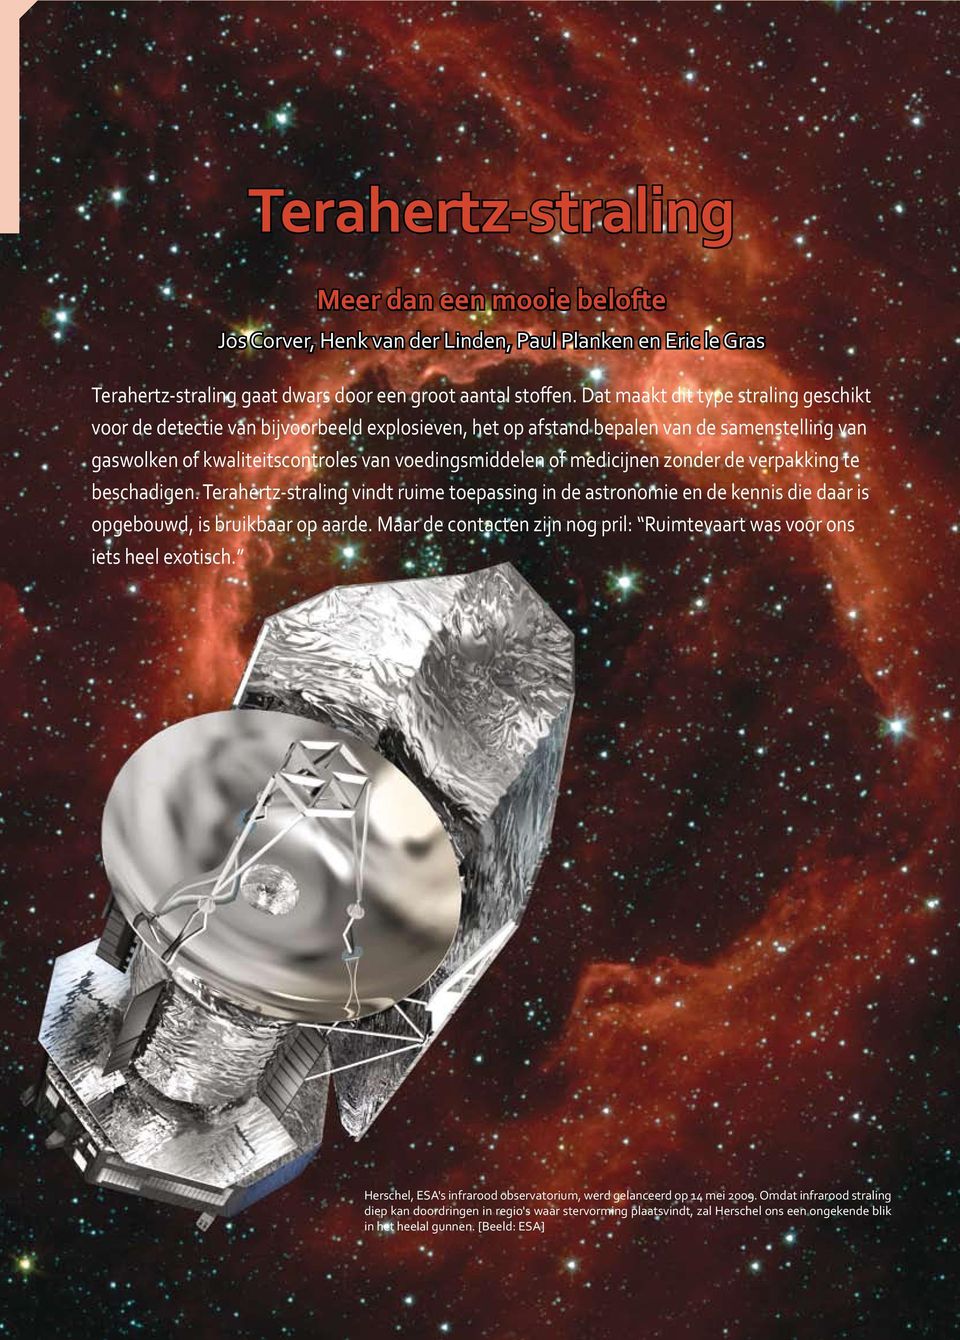 zonder de verpakking te beschadigen. Terahertz-straling vindt ruime toepassing in de astronomie en de kennis die daar is opgebouwd, is bruikbaar op aarde.